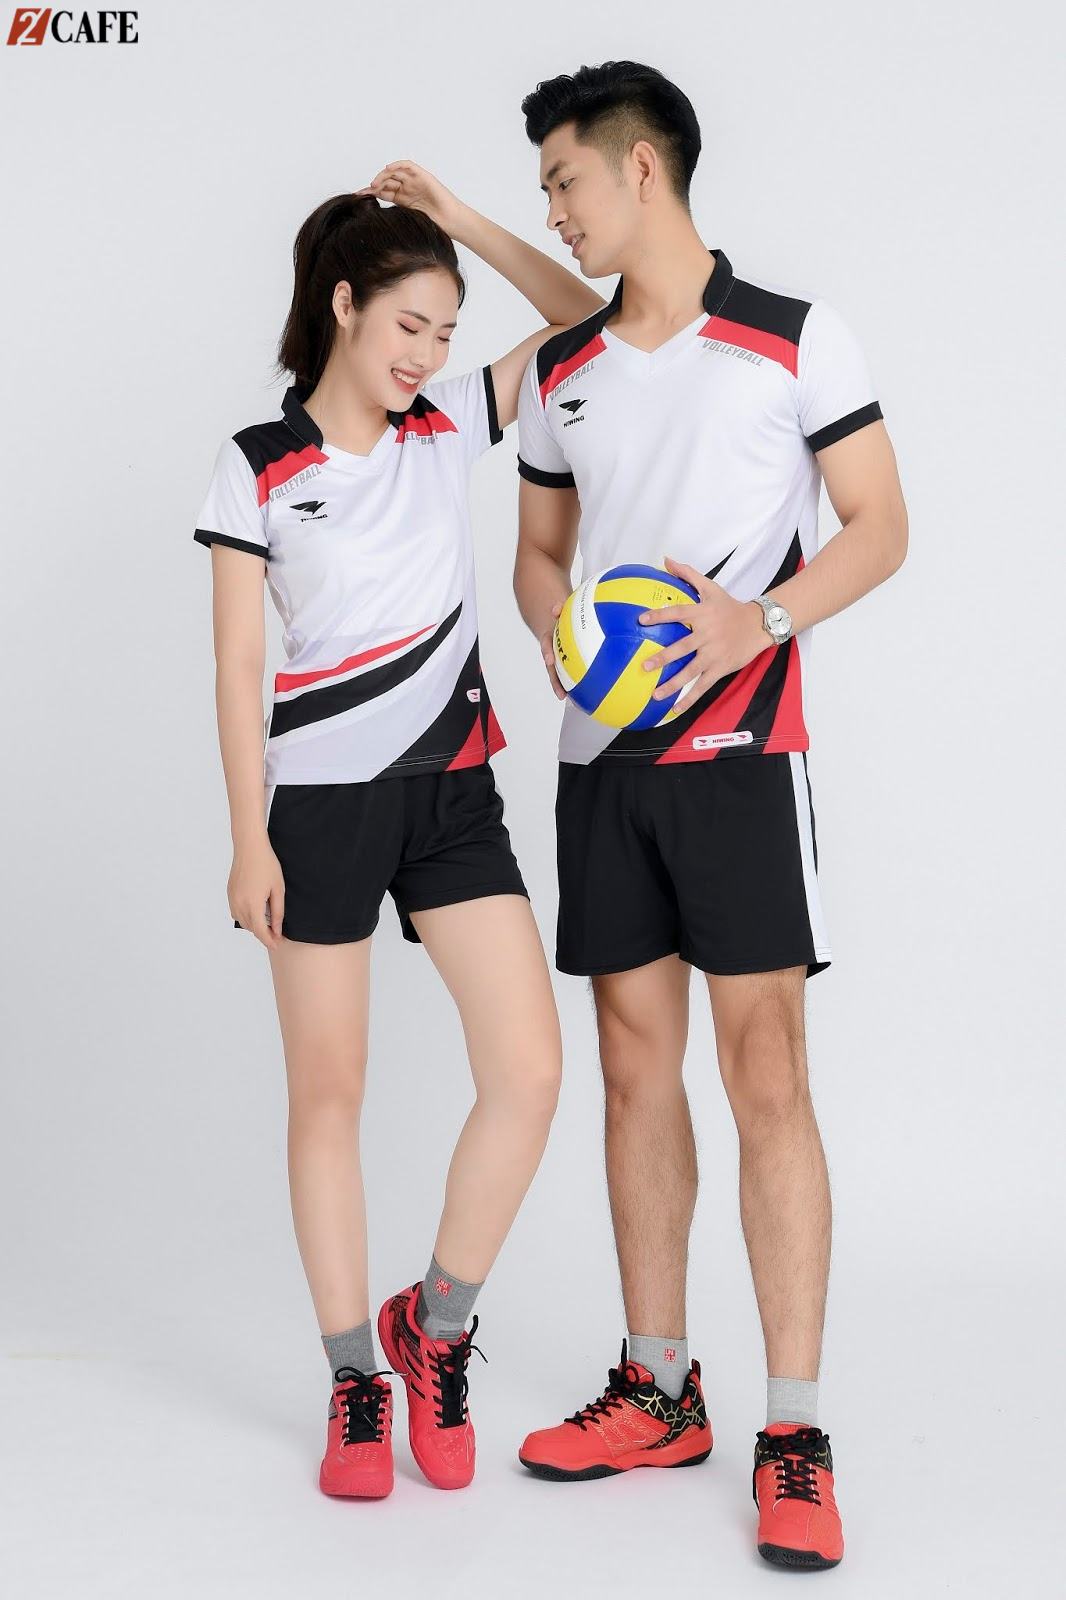 Mẫu đồng phục bóng chuyền được thiết kế khá đơn giản với điểm nhấn là màu đen và cam nổi bật